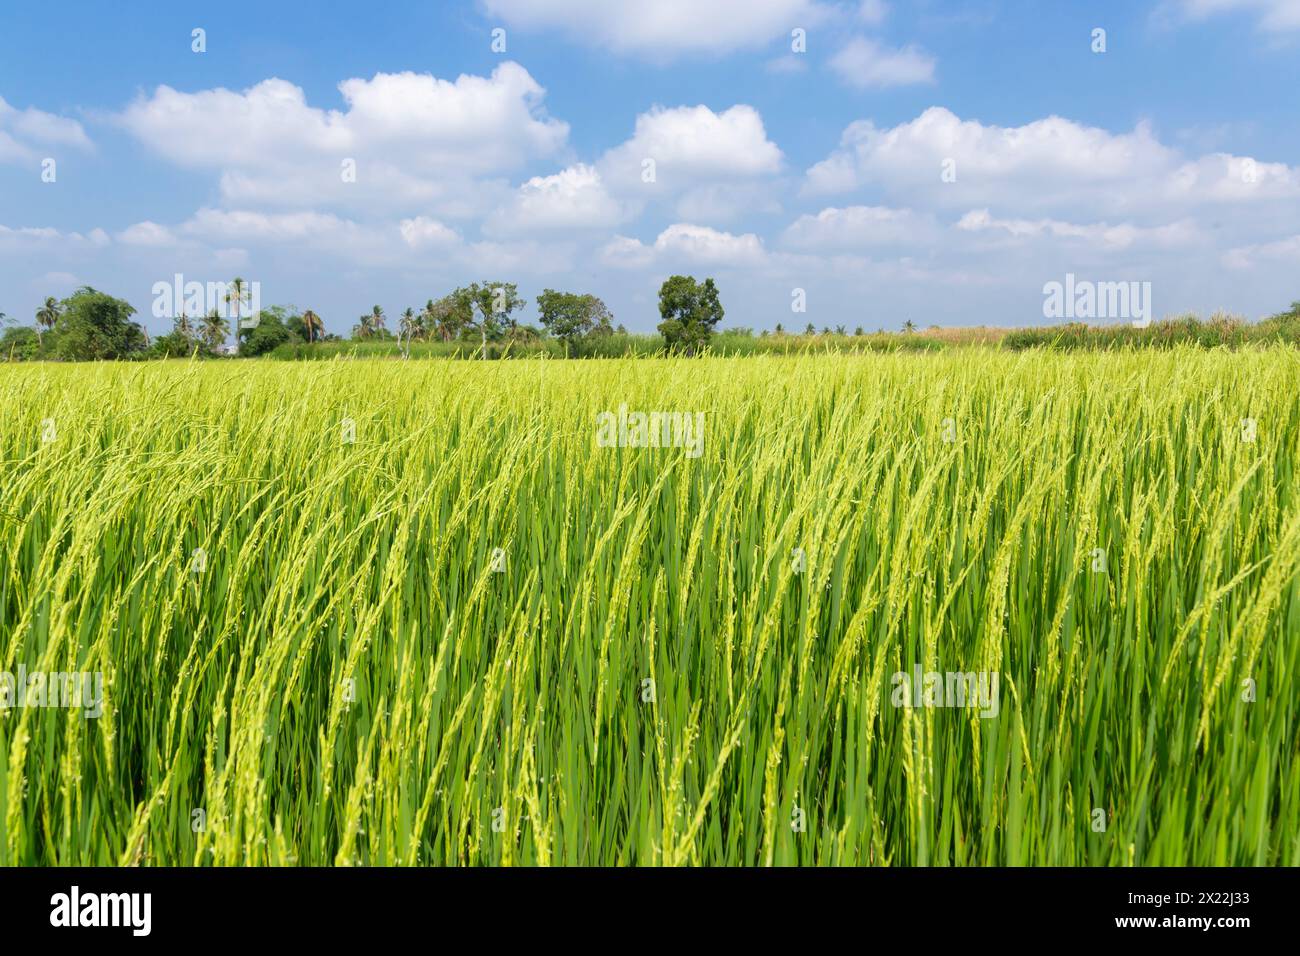 Wunderschöner Blick auf die Landwirtschaft grüne Reisfeld Landschaft vor blauem Himmel mit Wolkenhintergrund, Thailand. Paddy Farm Pflanze friedlich. Umgebung har Stockfoto